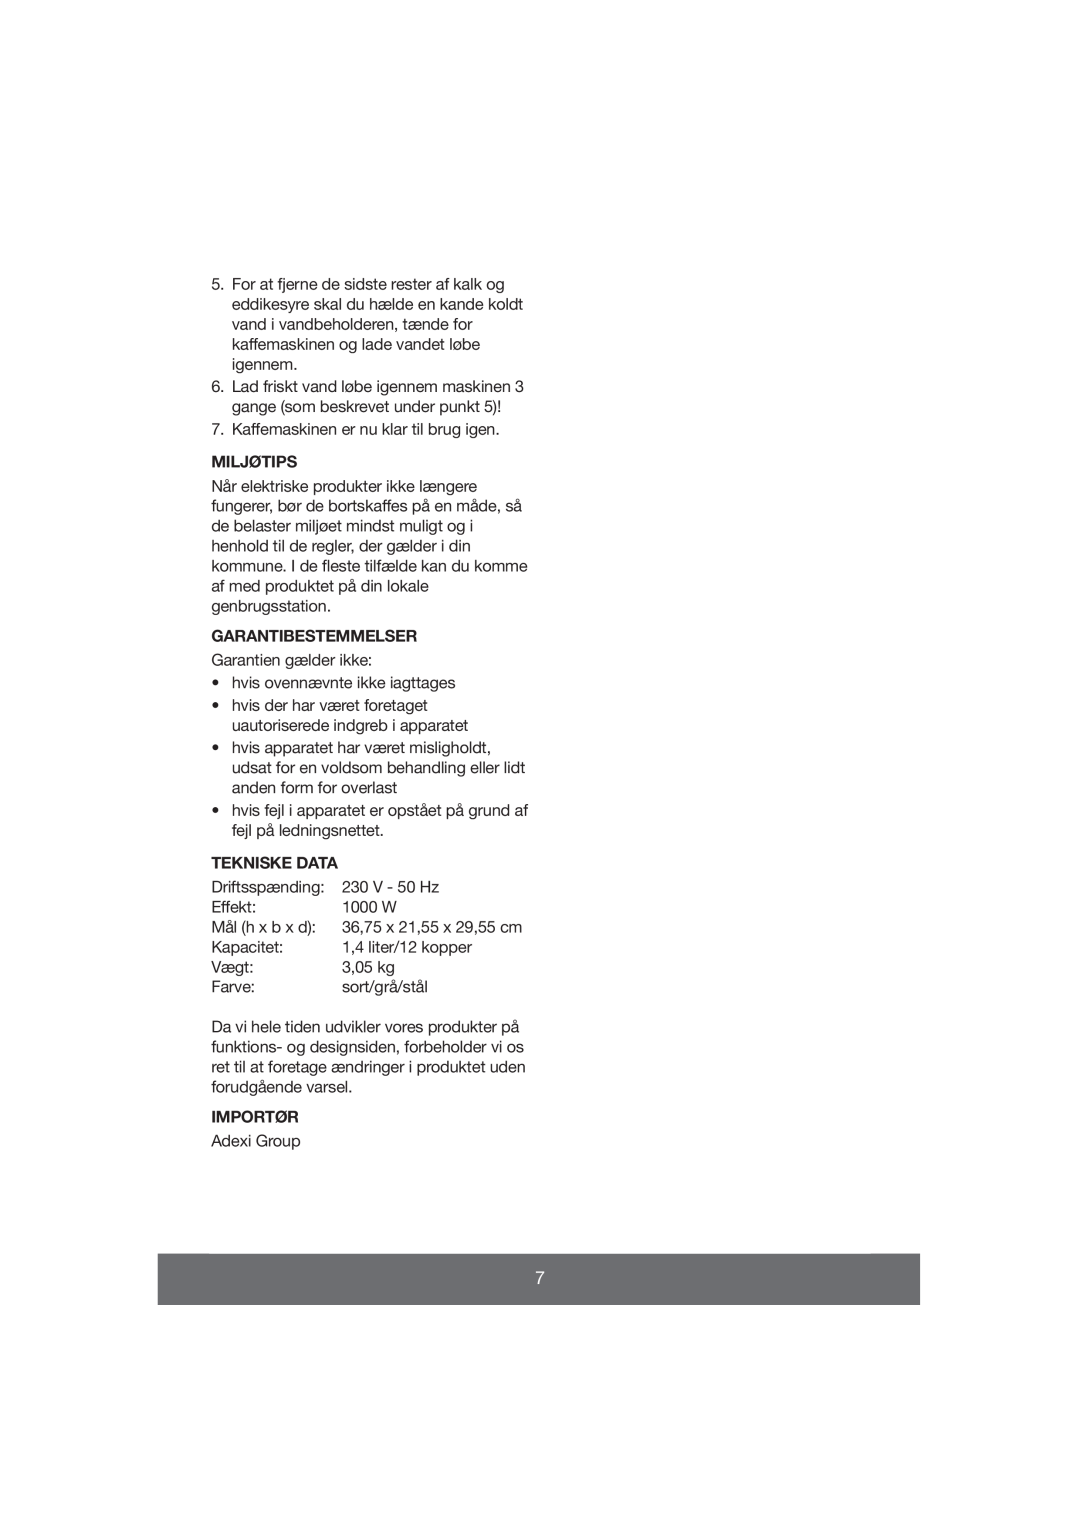 Butler 645-061 manual Miljøtips, Garantibestemmelser, Tekniske Data, Importør 